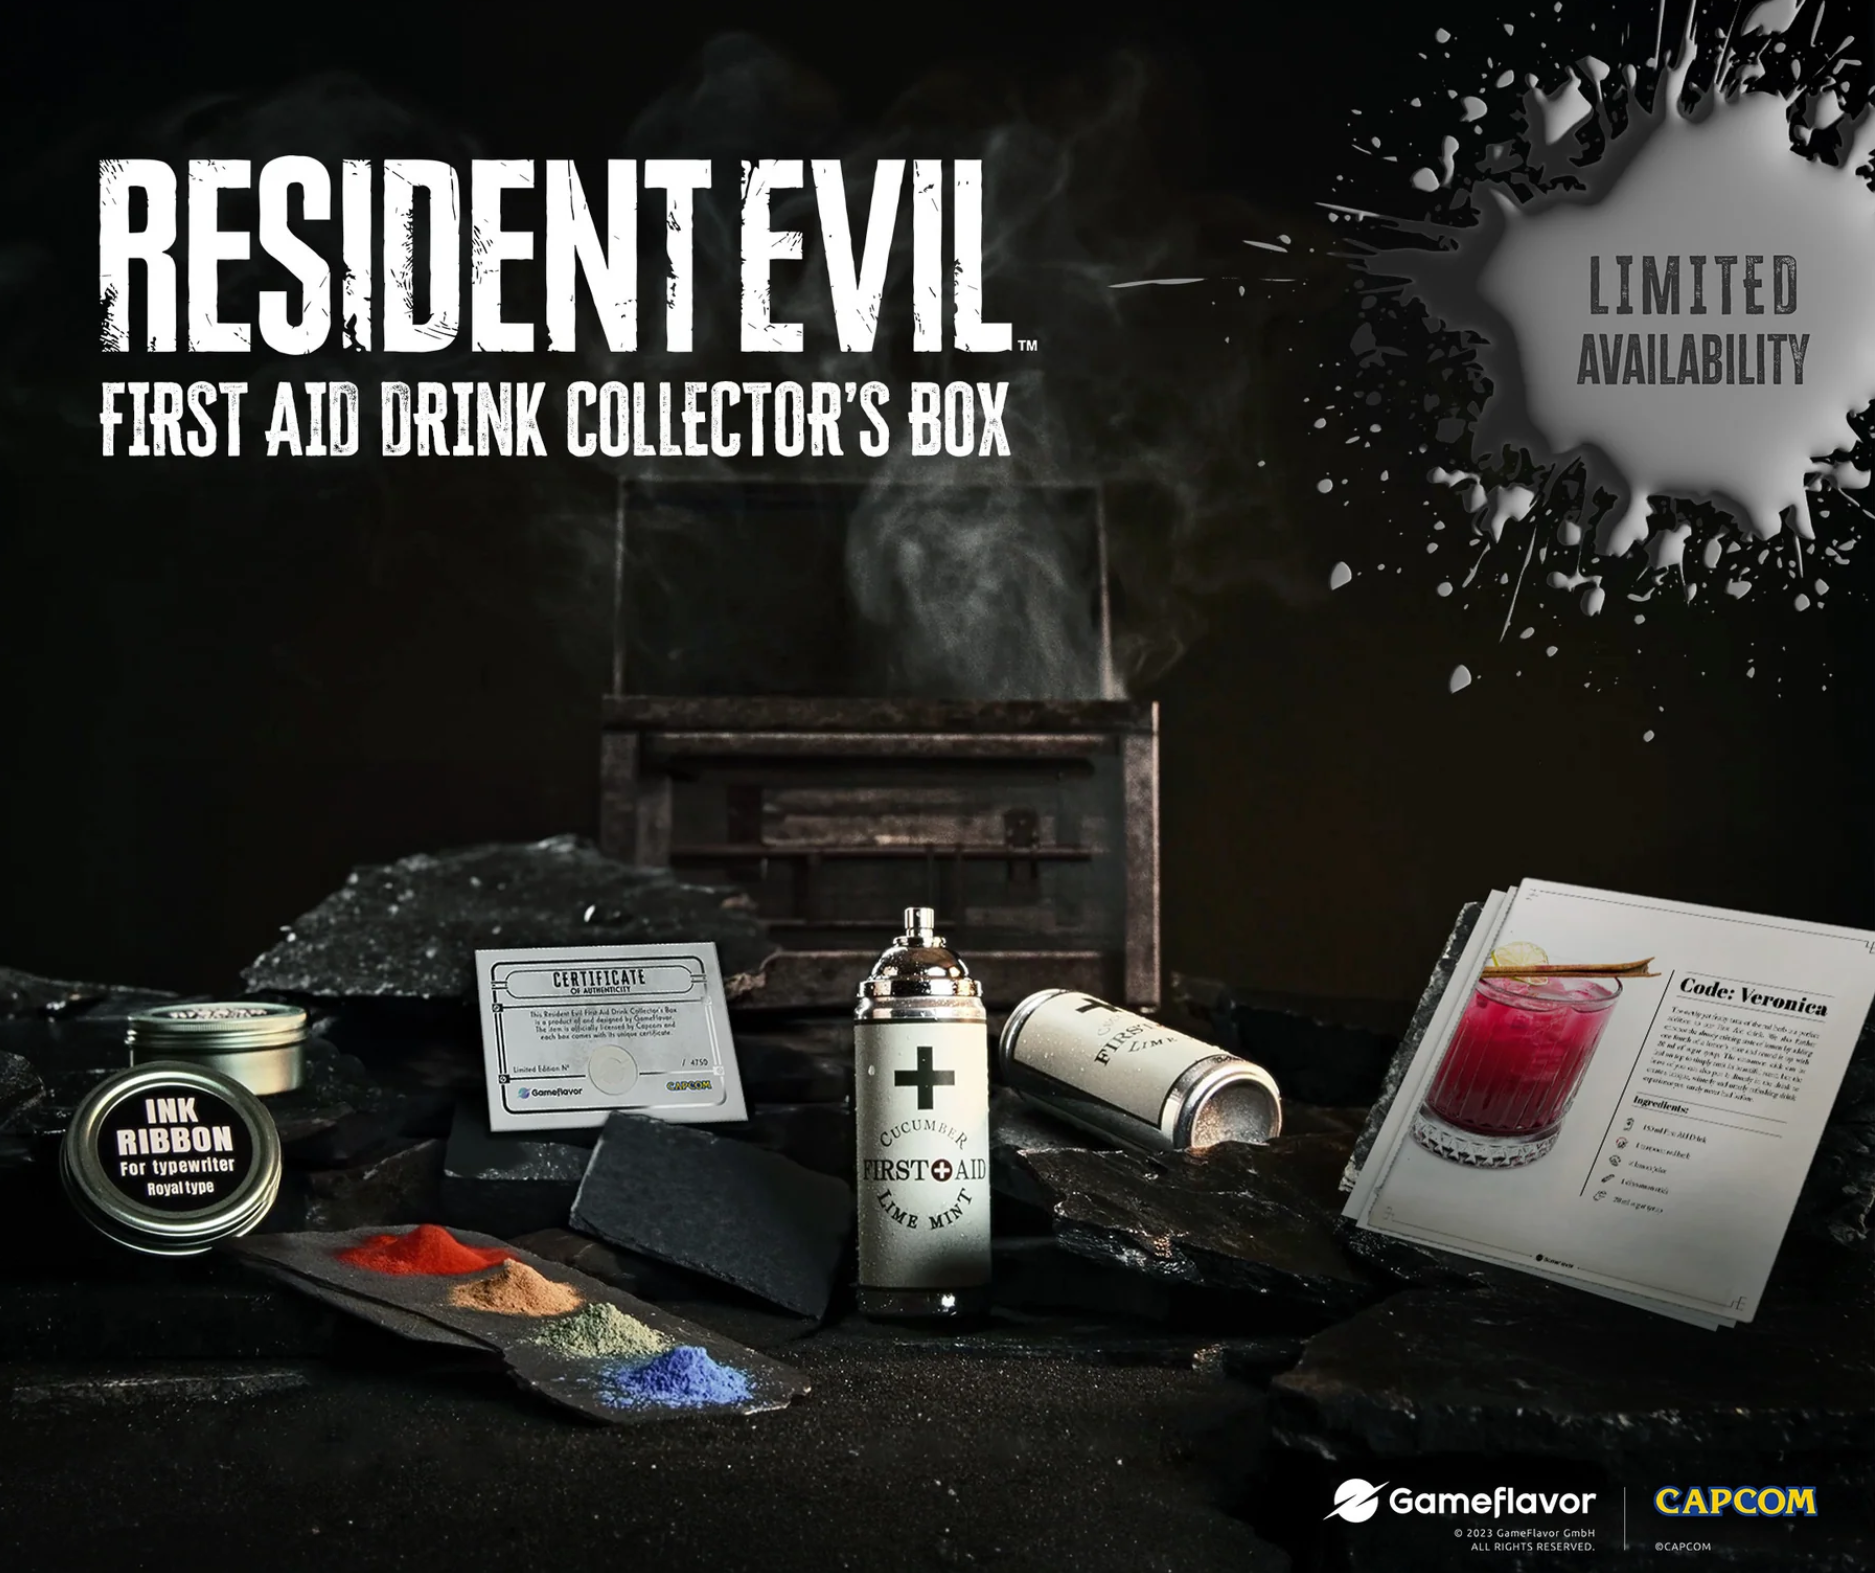 Resident Evil s'offre un nouvel objet collector qui devrait assurément plaire aux fans de la franchise ainsi qu'aux collectionneurs. Attention toutefois, en plus d'être insolite, le collector est ultra limité.